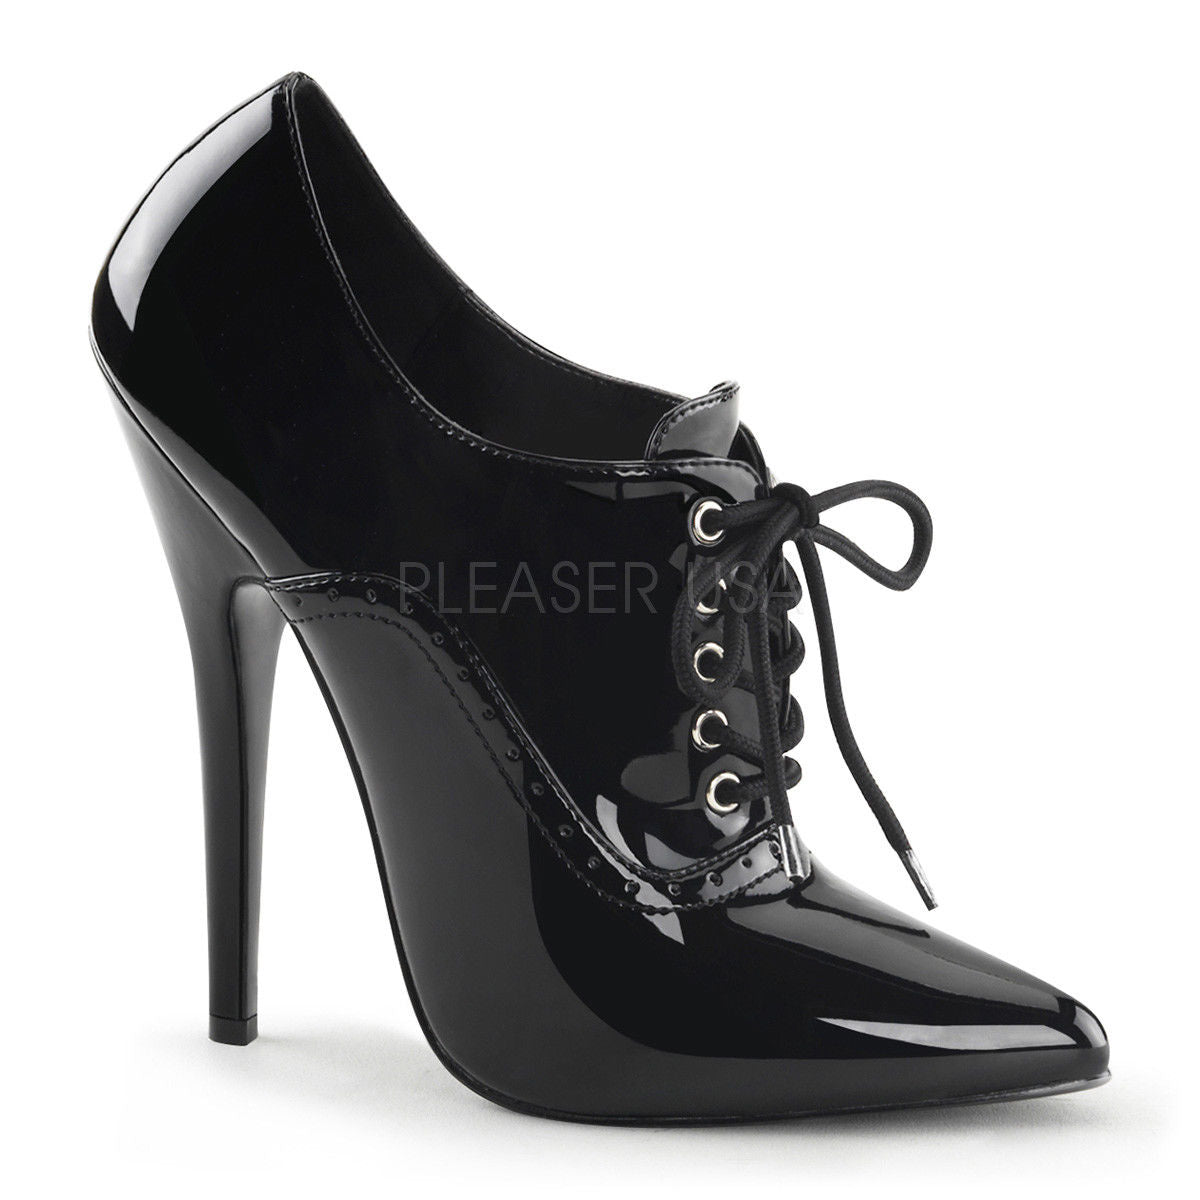 Image detail for -... Women Nike Heels 12] - $115.99 : Nike Heels Australia,Nike  high heels | Nike high heels, Nike heels, Jordan high heels